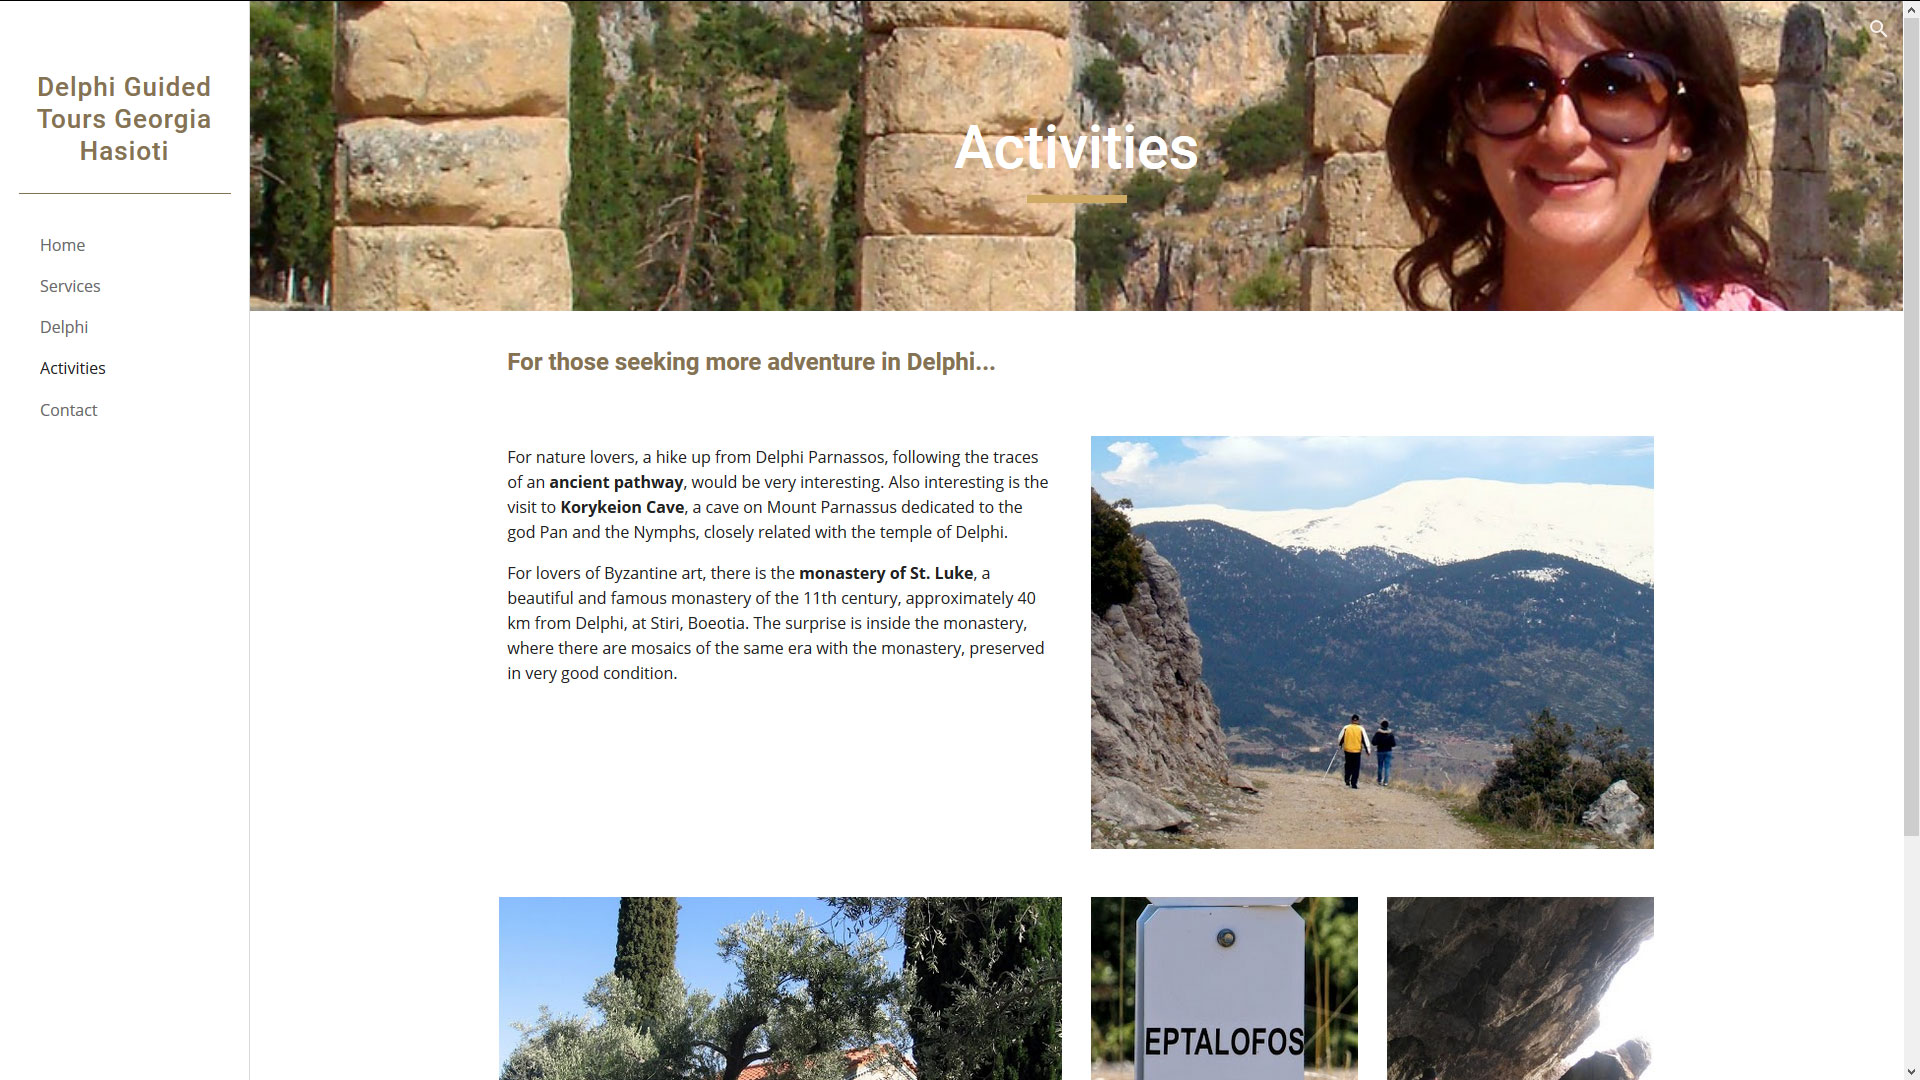 www.delphi-guide.gr